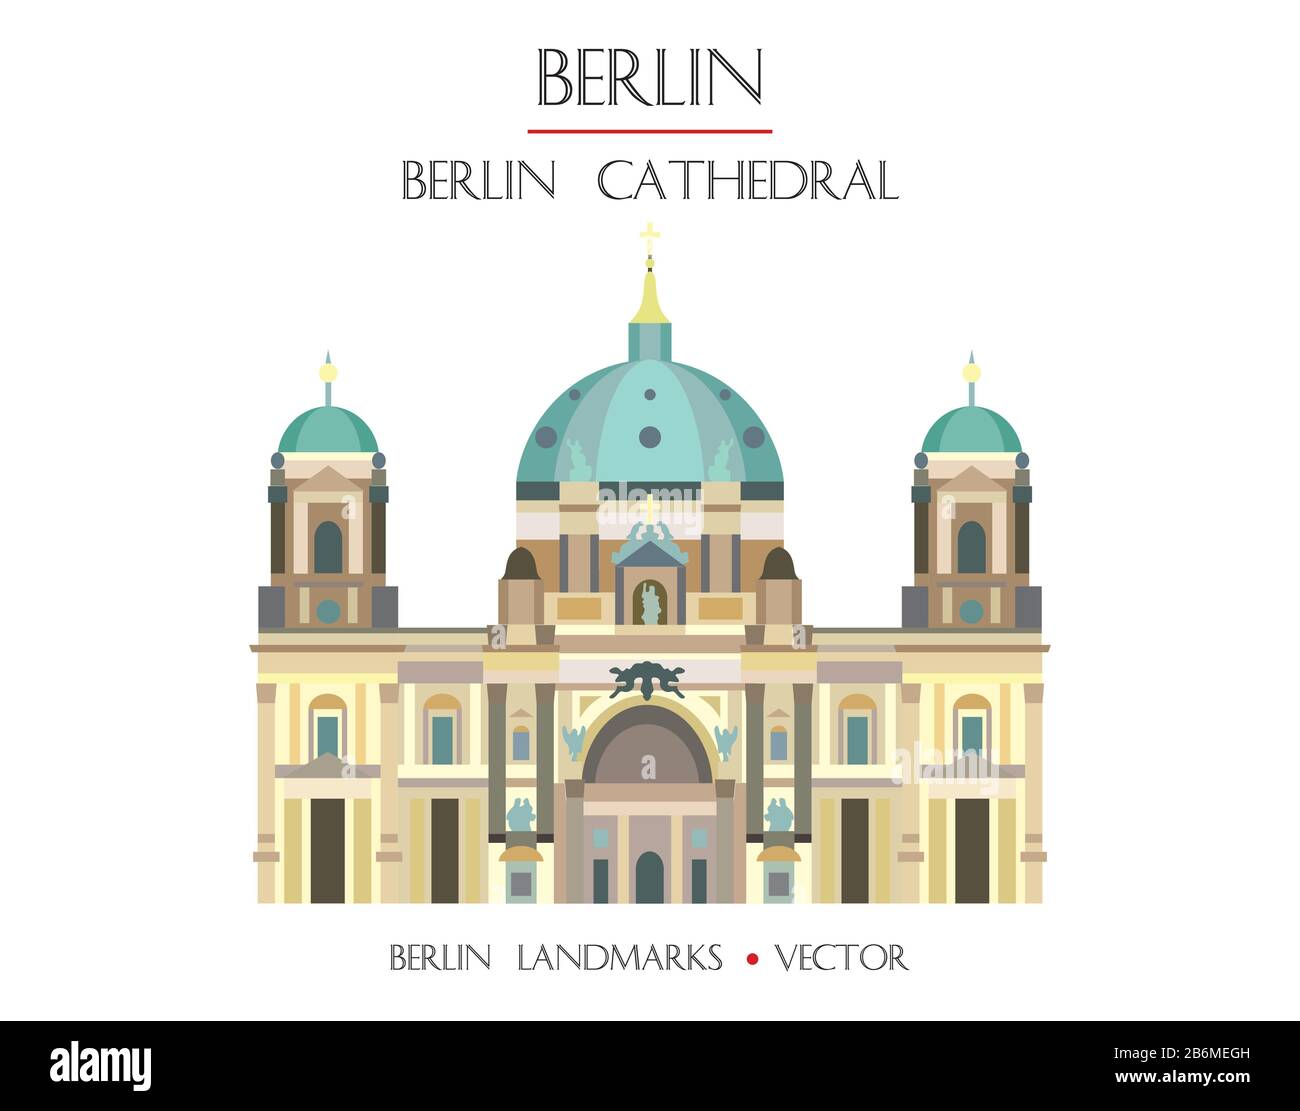 Vecteur coloré Berlin vue de face de la cathédrale, célèbre monument de Berlin, Allemagne. Illustration plate vectorielle isolée sur fond blanc. Voyage à Berlin Illustration de Vecteur